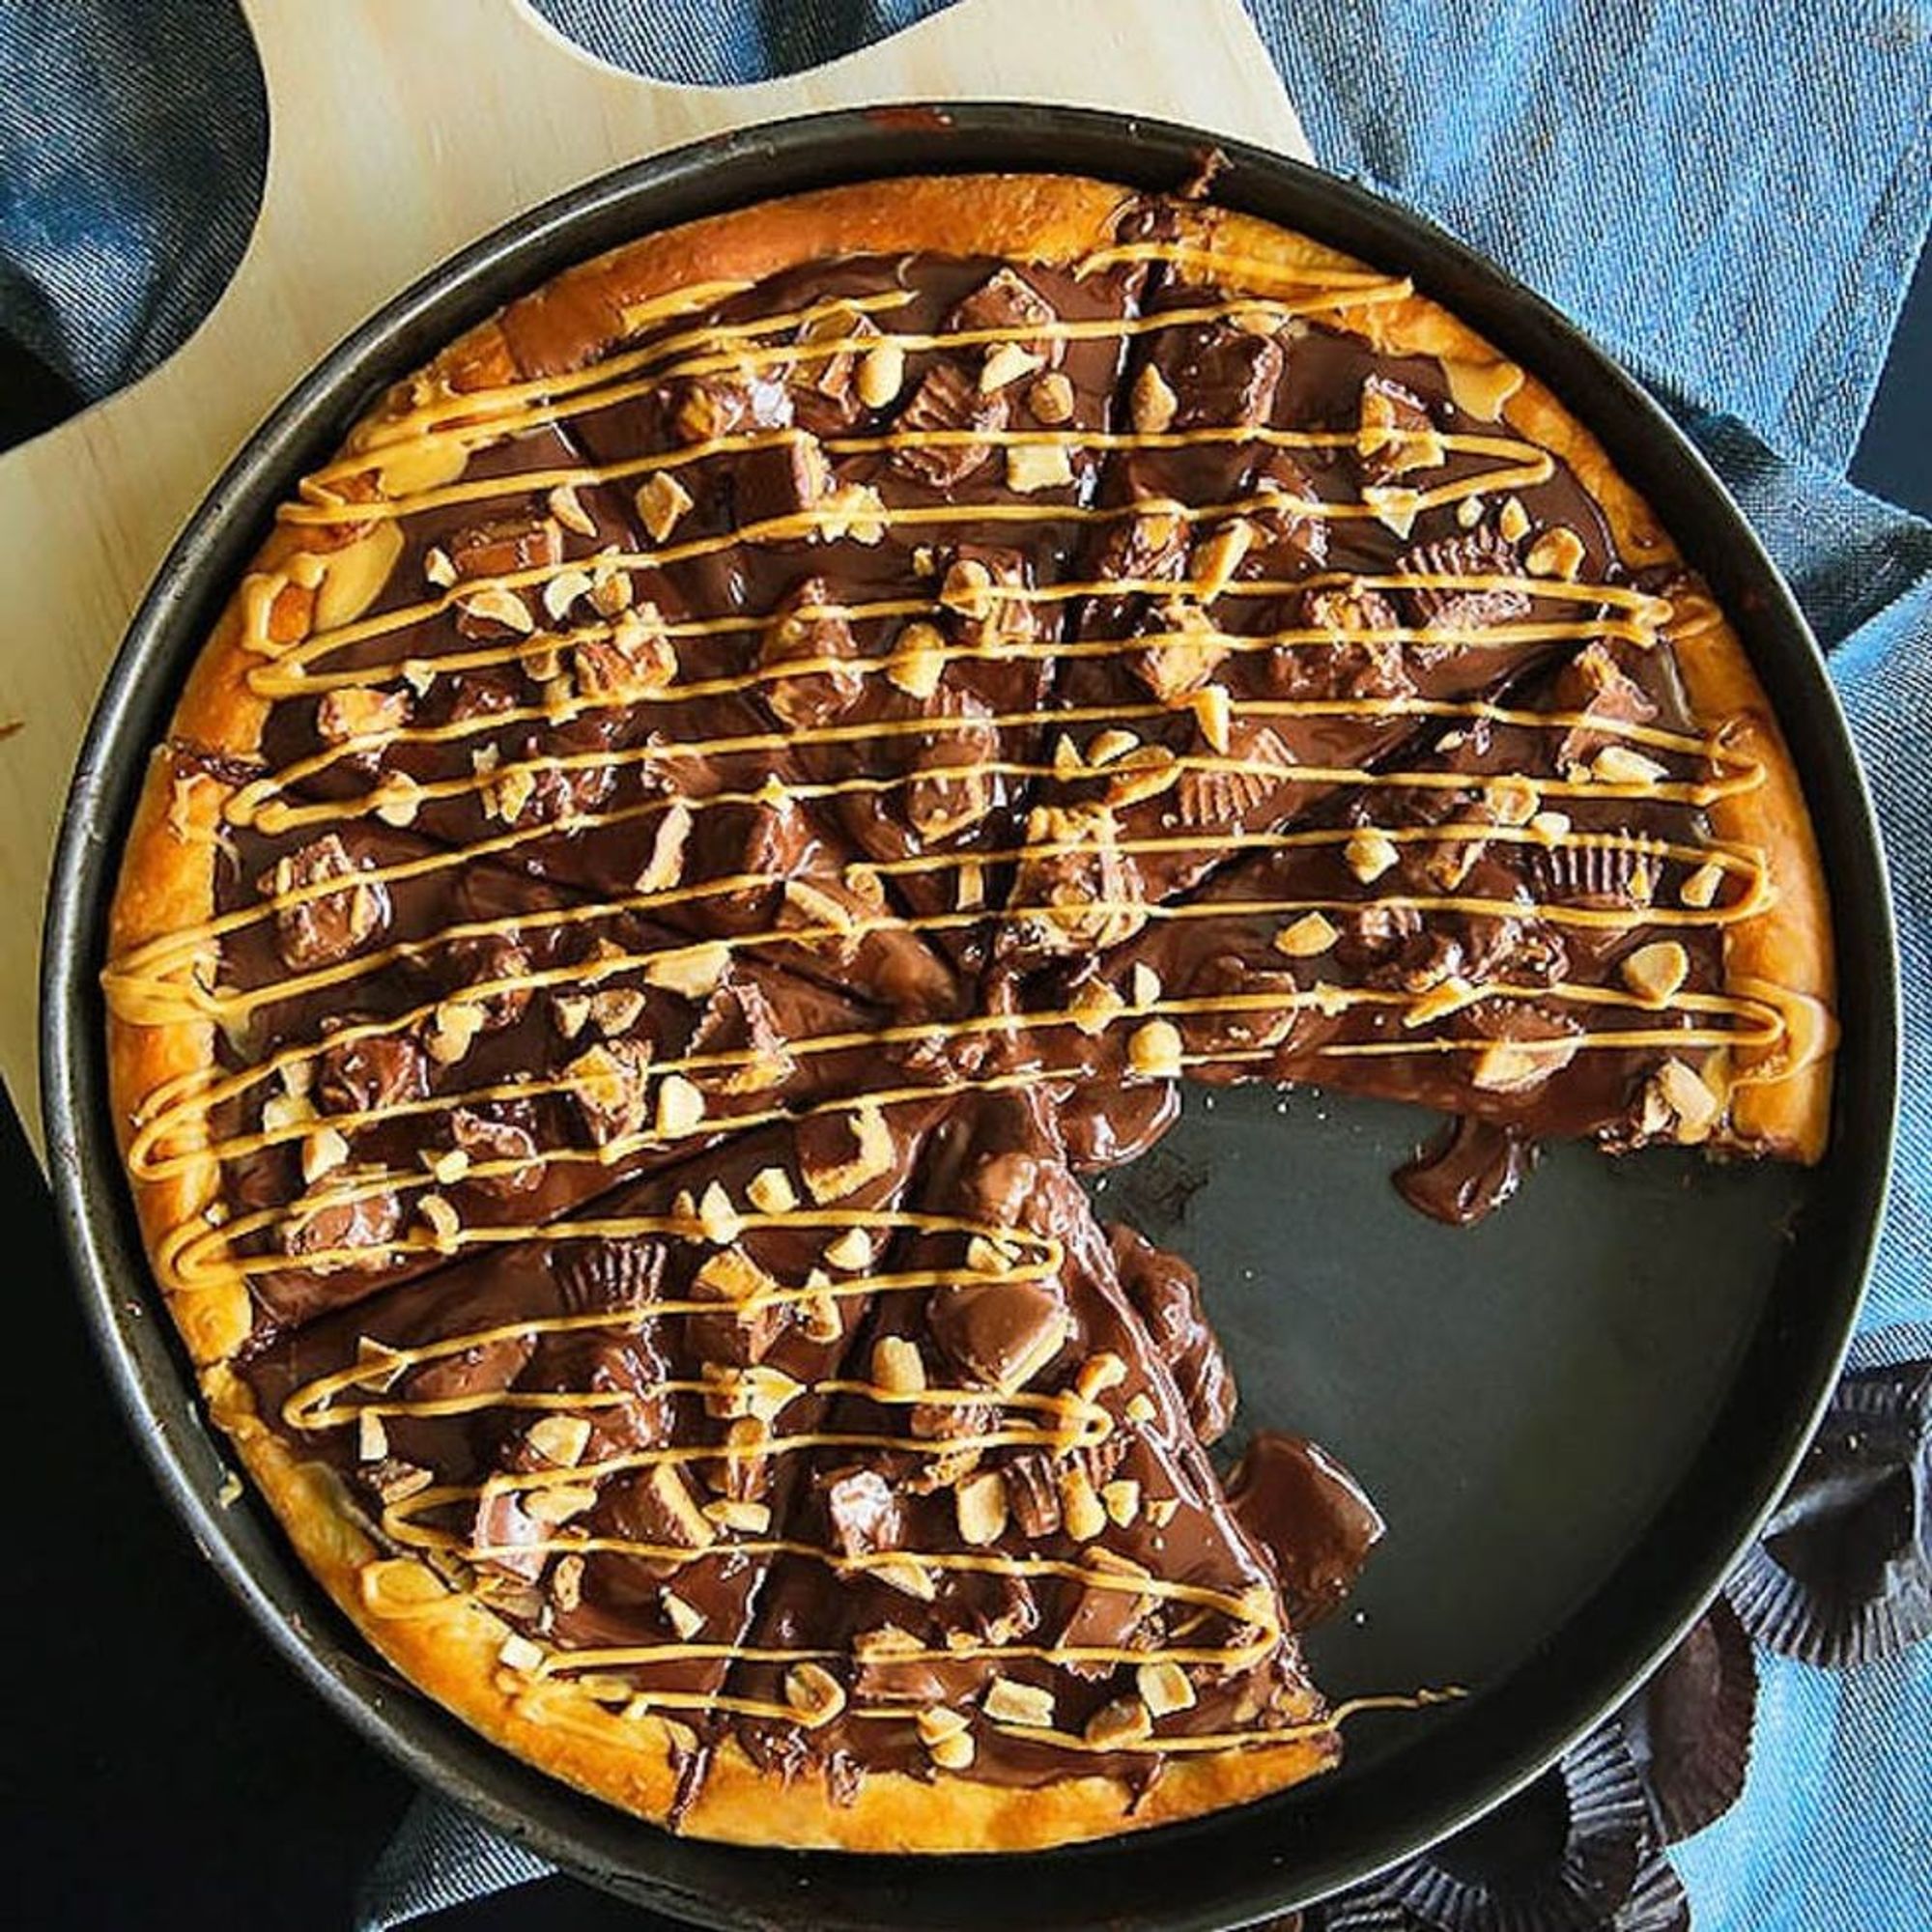 шоколадная пицца играть онлайн фото 101